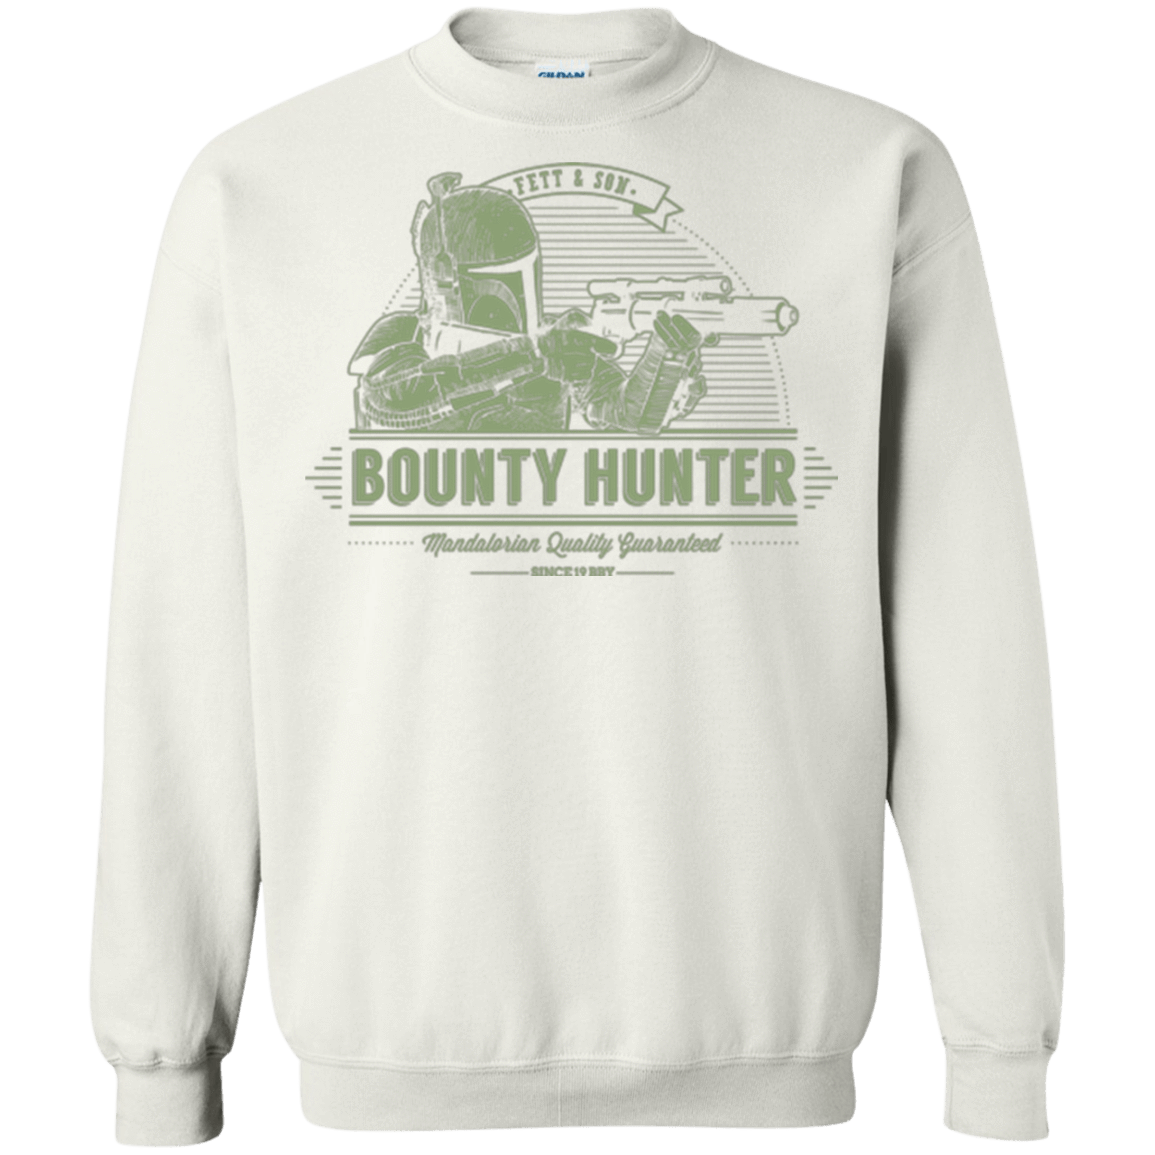 Sweatshirts White / Small Galactic Bounty Hunter Crewneck Sweatshirt